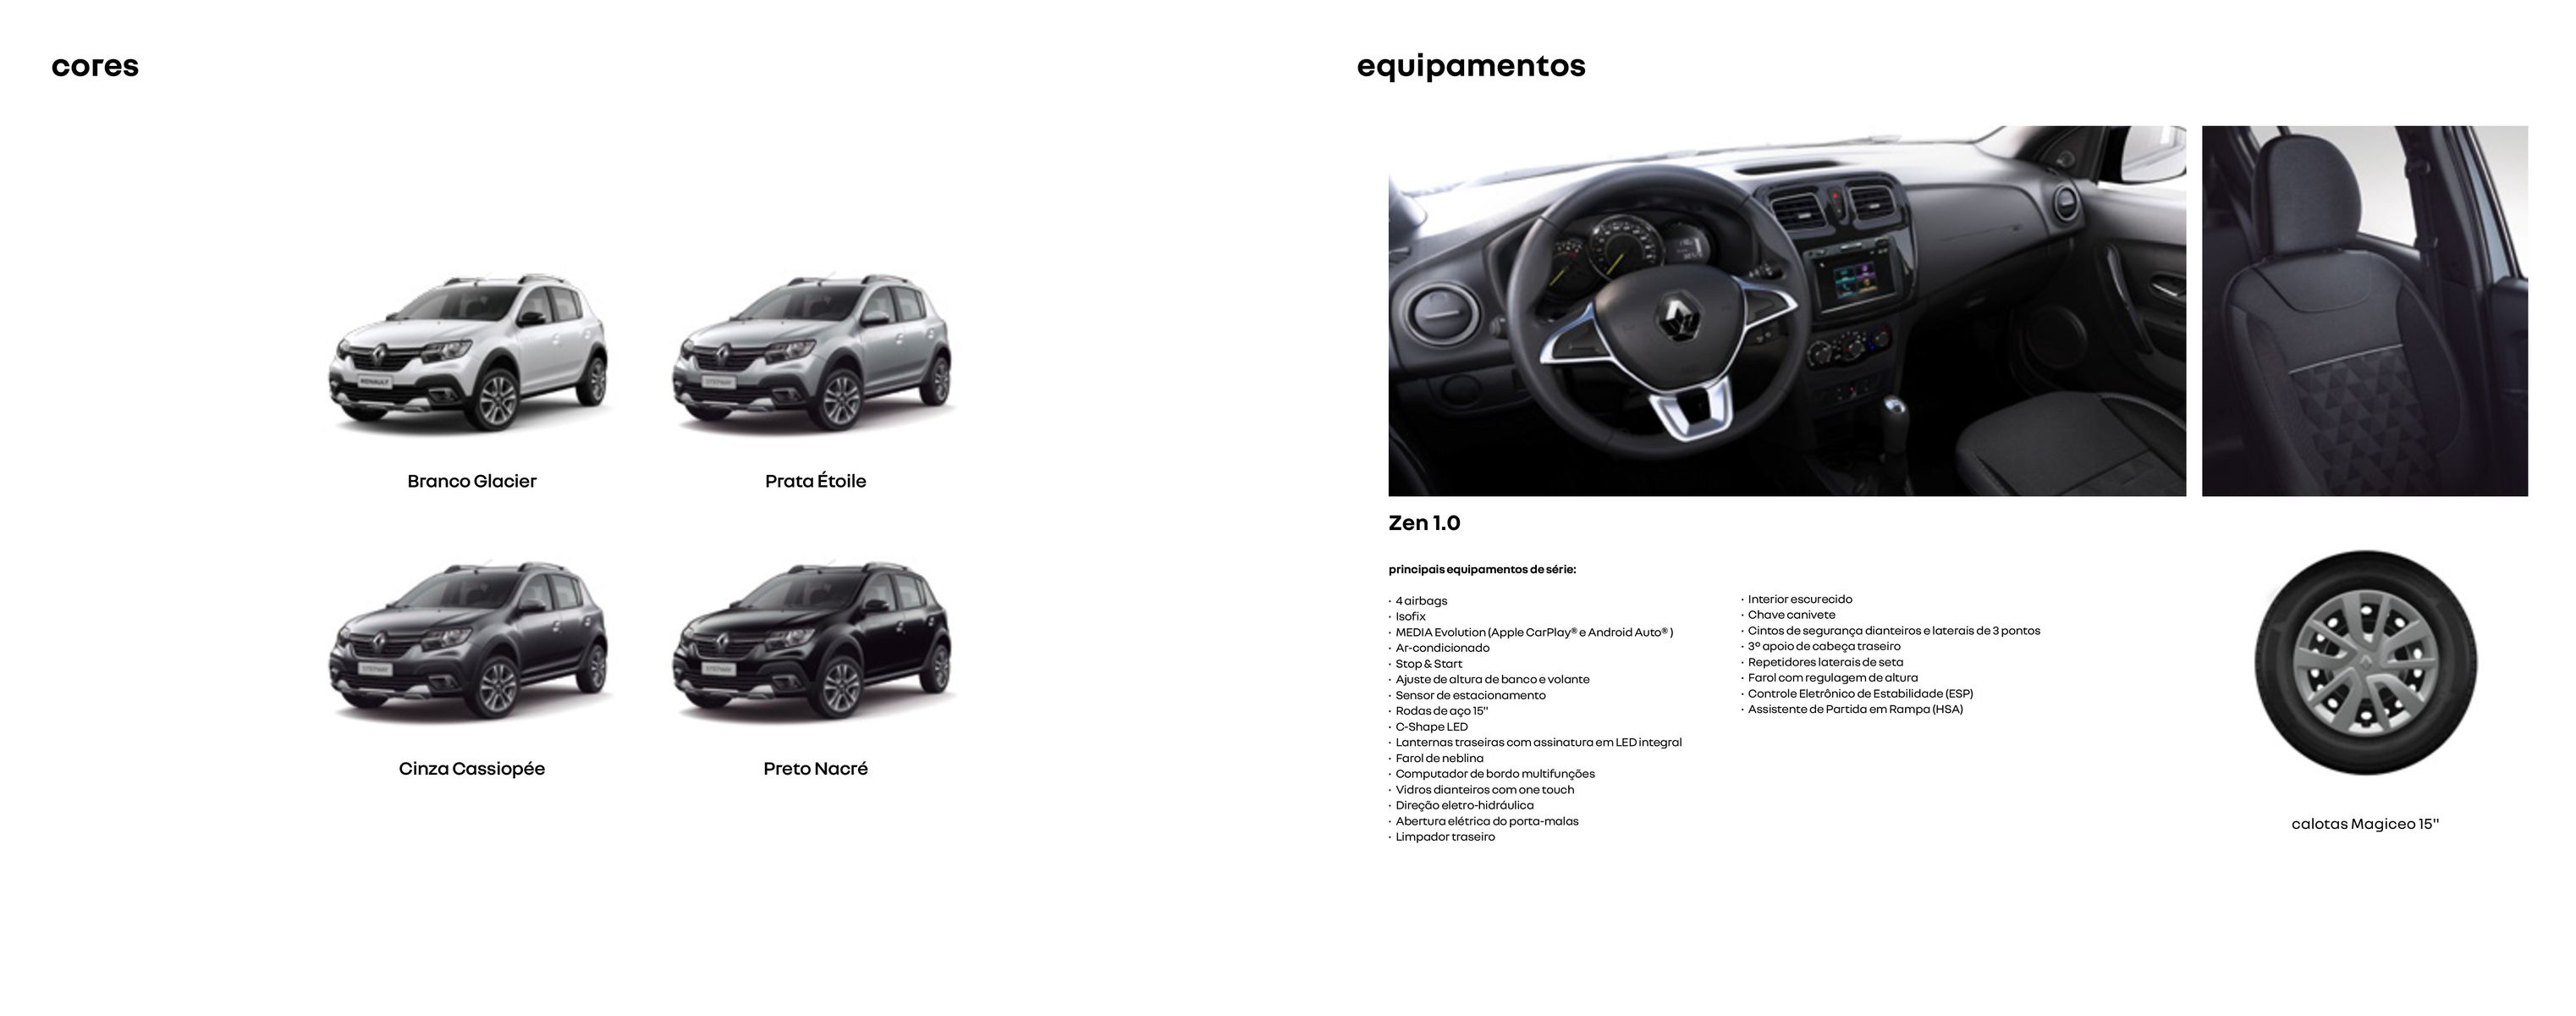 Descontos especiais para o Renault Zen 1.0 com equipamentos de série exclusivos